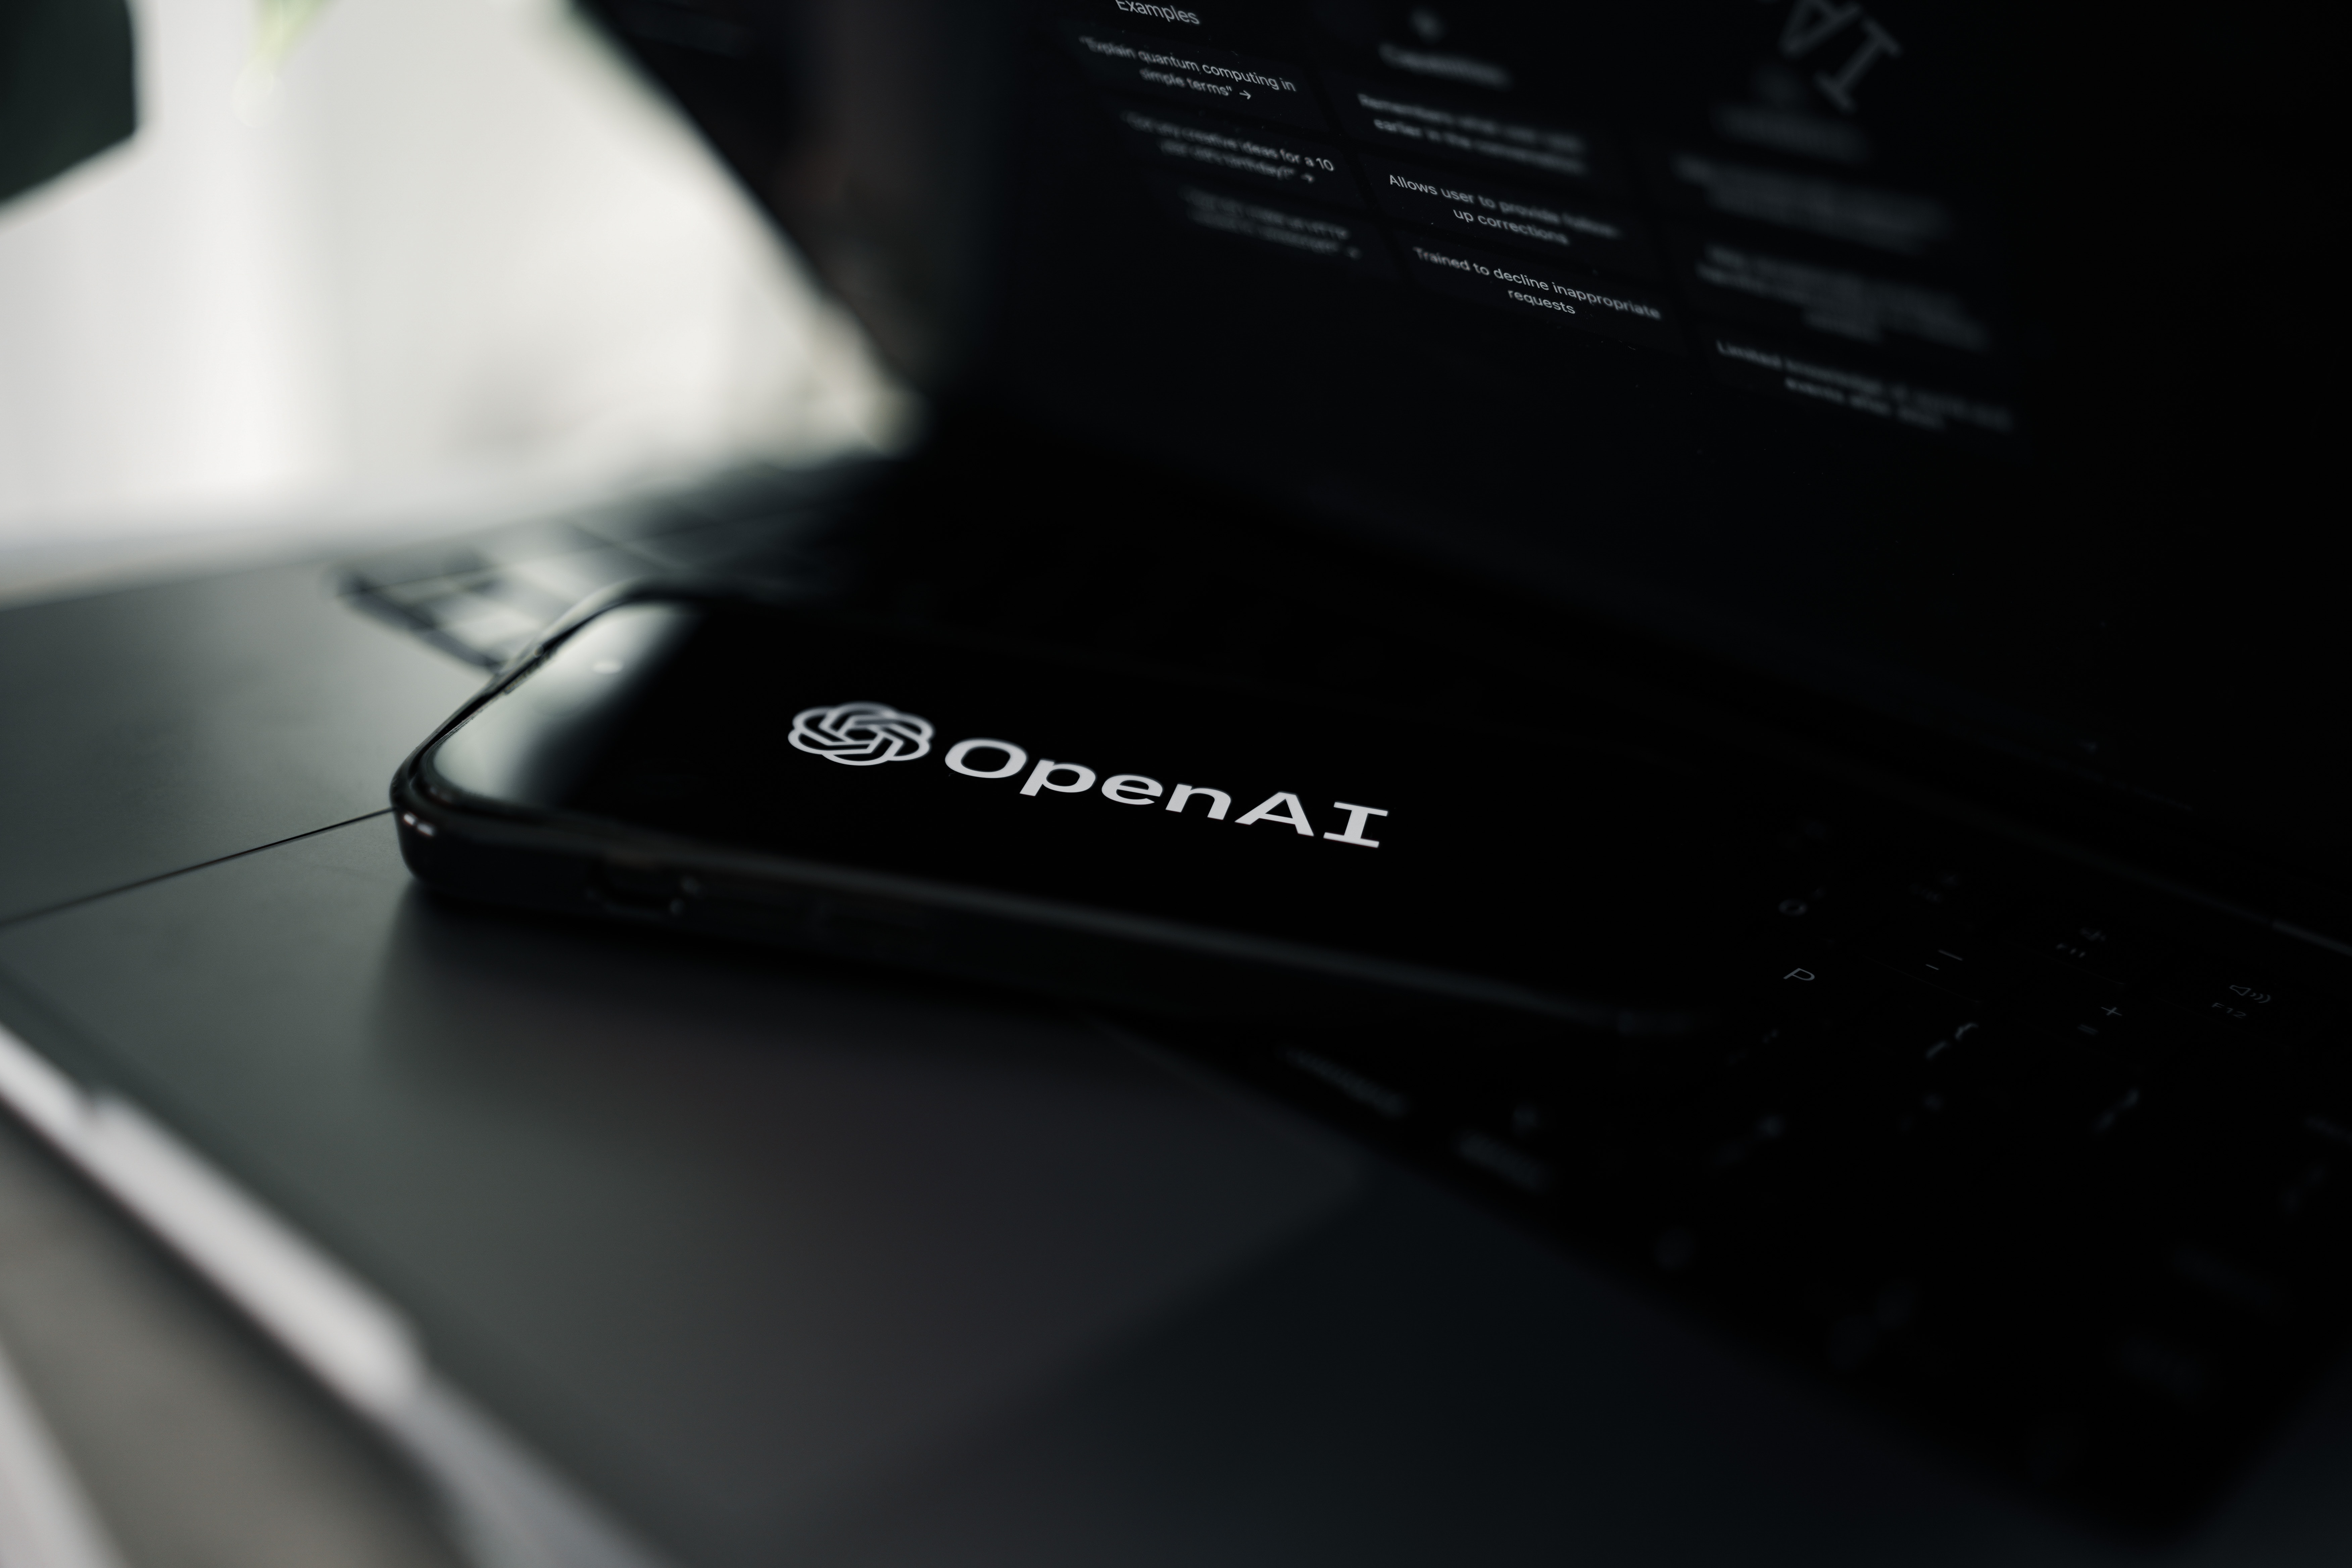 OpenAI zawarło umowę z Axel Springer na dostarczanie treści informacyjnych dla ChatGPT